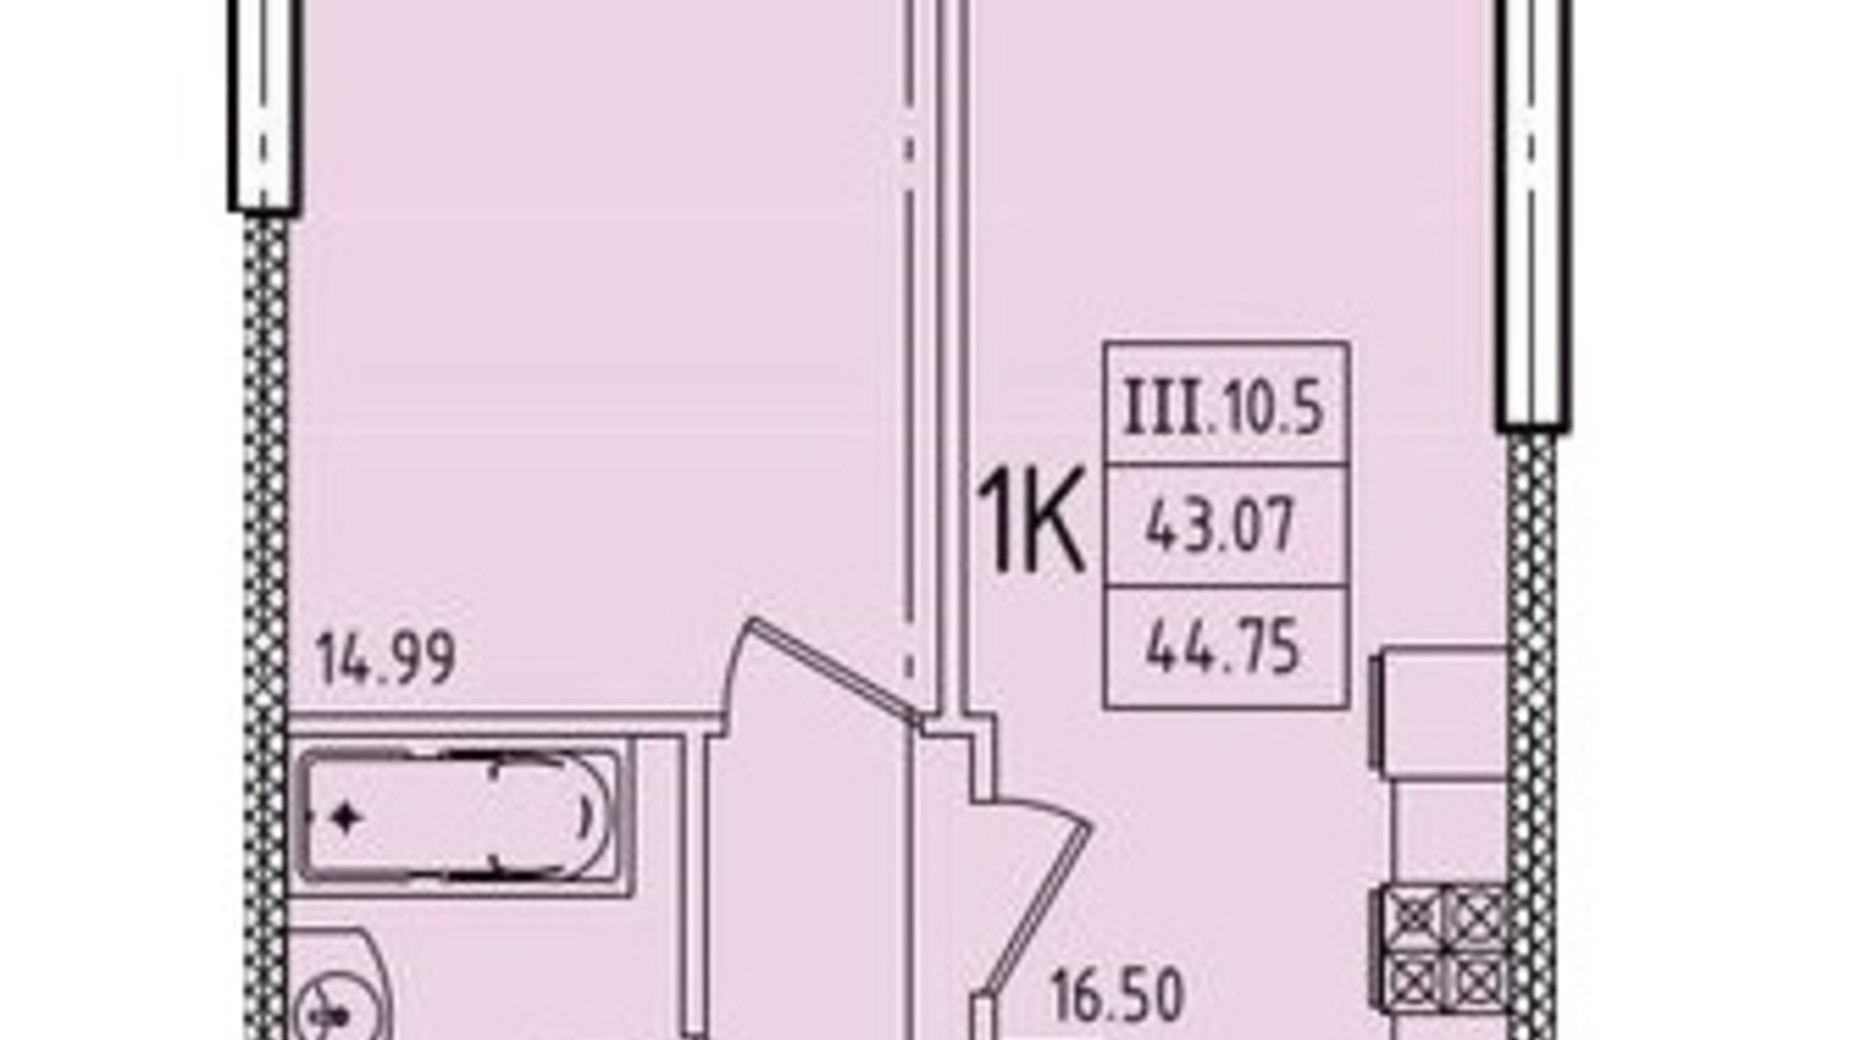 Планування 1-кімнатної квартири в ЖК Еллада 44.75 м², фото 716134